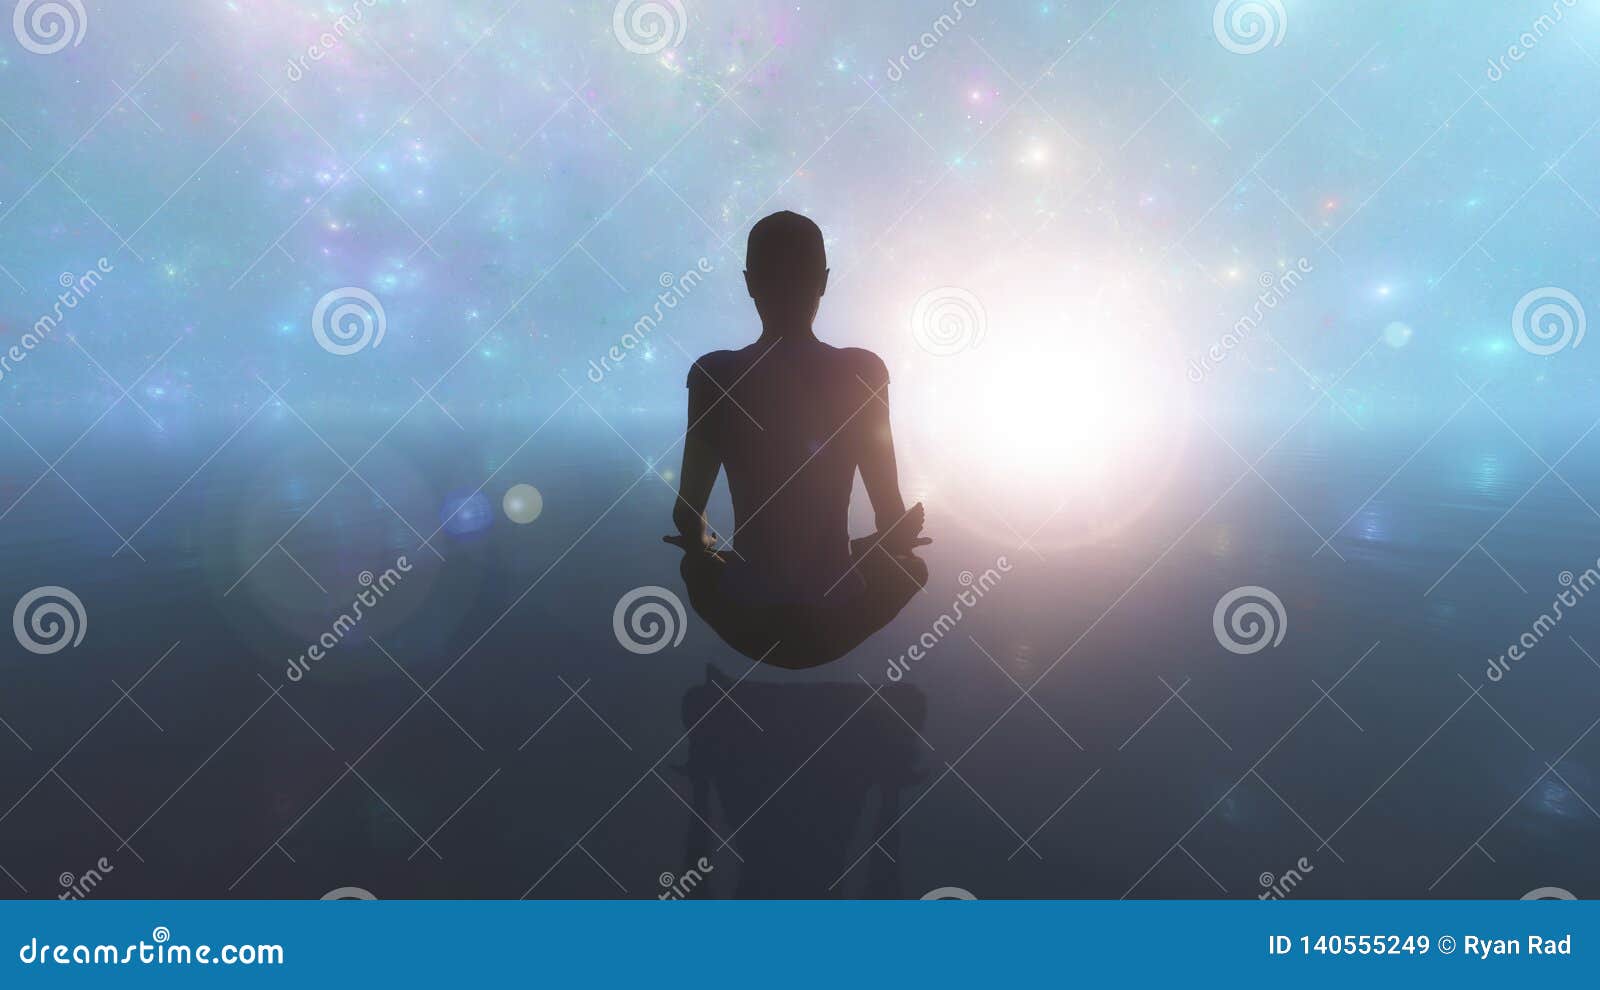 Meditación Profunda, Una Mujer Joven Que Se Sienta En La Meditación Profunda, La Meditación De La Yoga De La Mujer En El Océano E Stock de ilustración - Ilustración de aptitud, 140555249